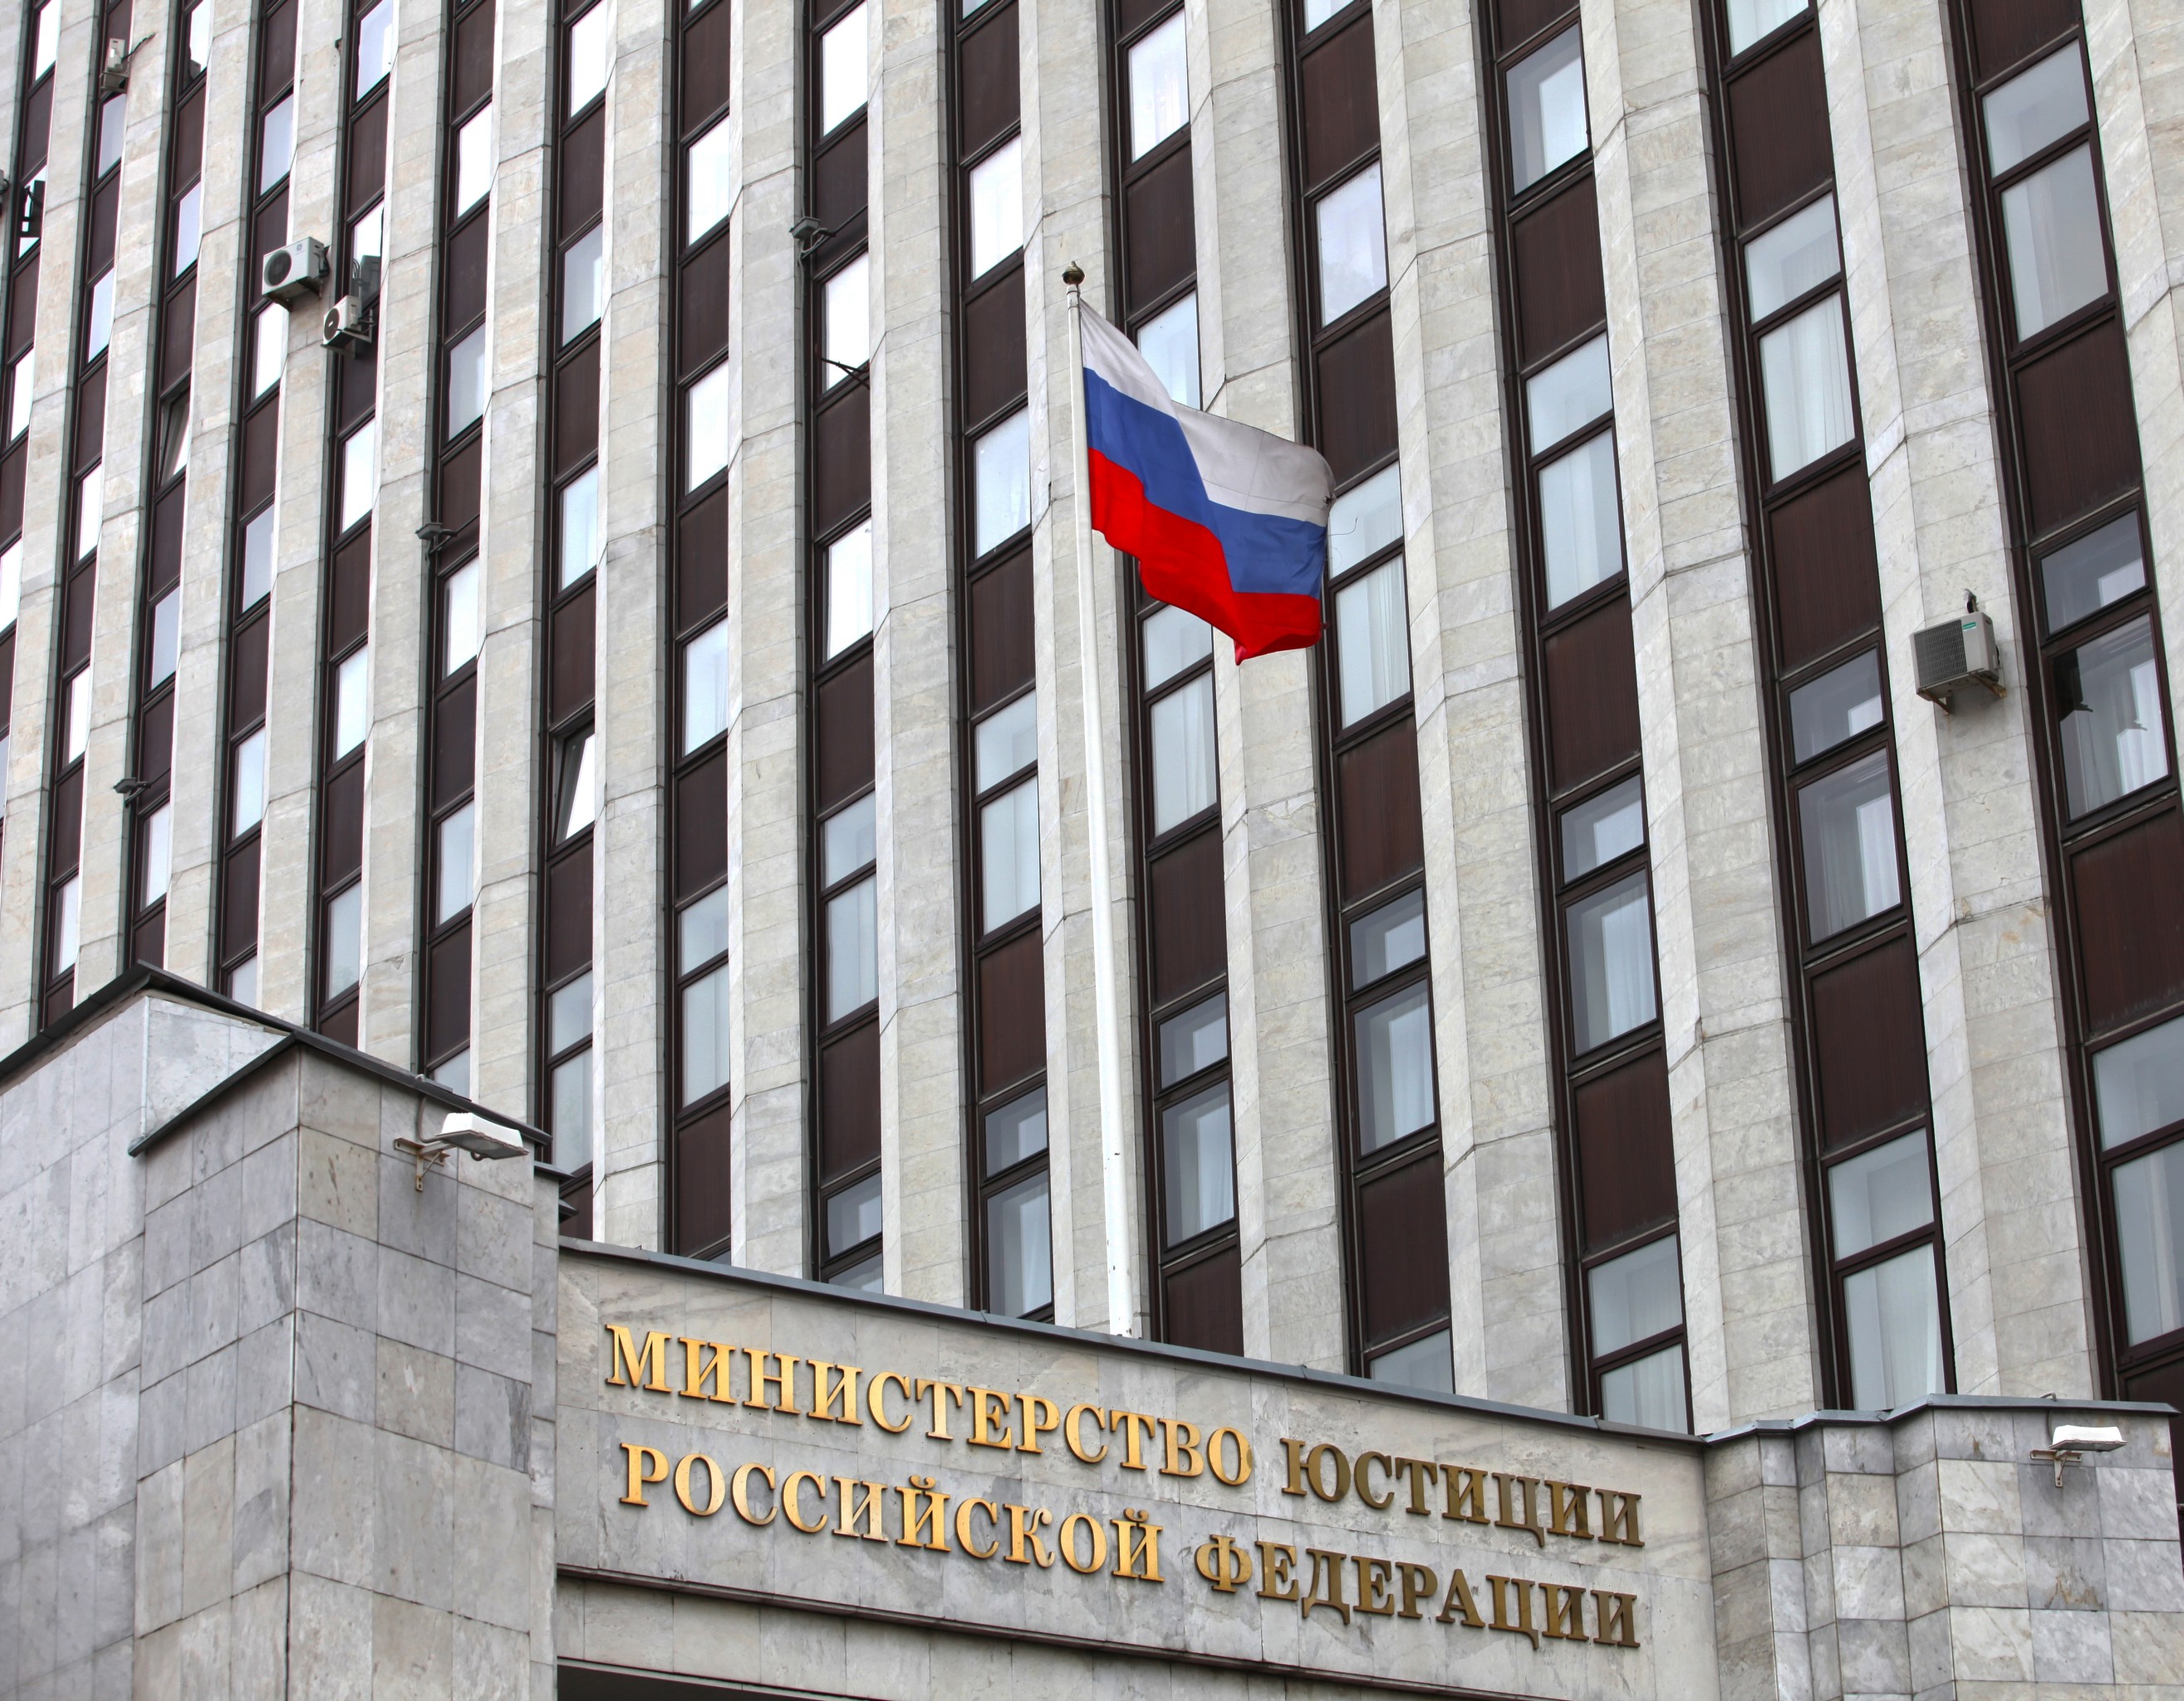 Решение суда Гааги дает основания требовать снятия ареста с зарубежной недвижимости РФ - Минюст